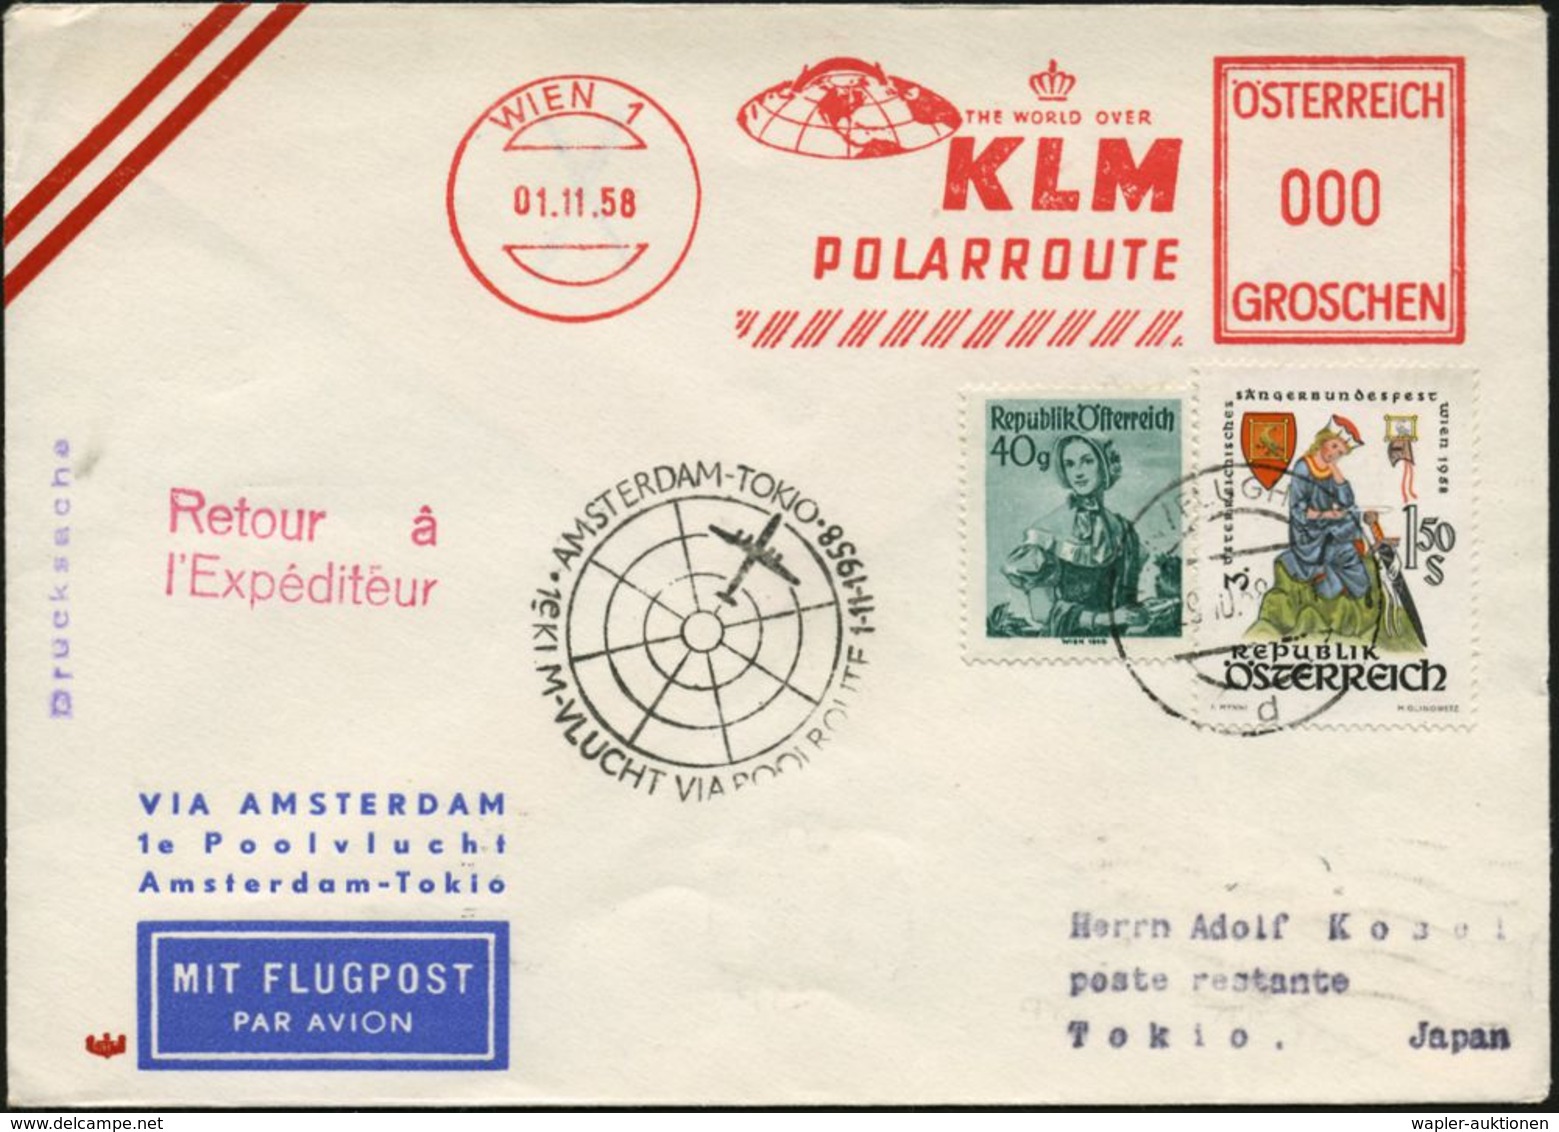 ÖSTERREICH 1958 (1.11.) Erstflug-Bf. (KLM): Amsterdam - Tokyo Via Nordpol (AS) AFS 000: WIEN 1/KLM/POLARROUTE (nördl. Gl - Arktis Expeditionen